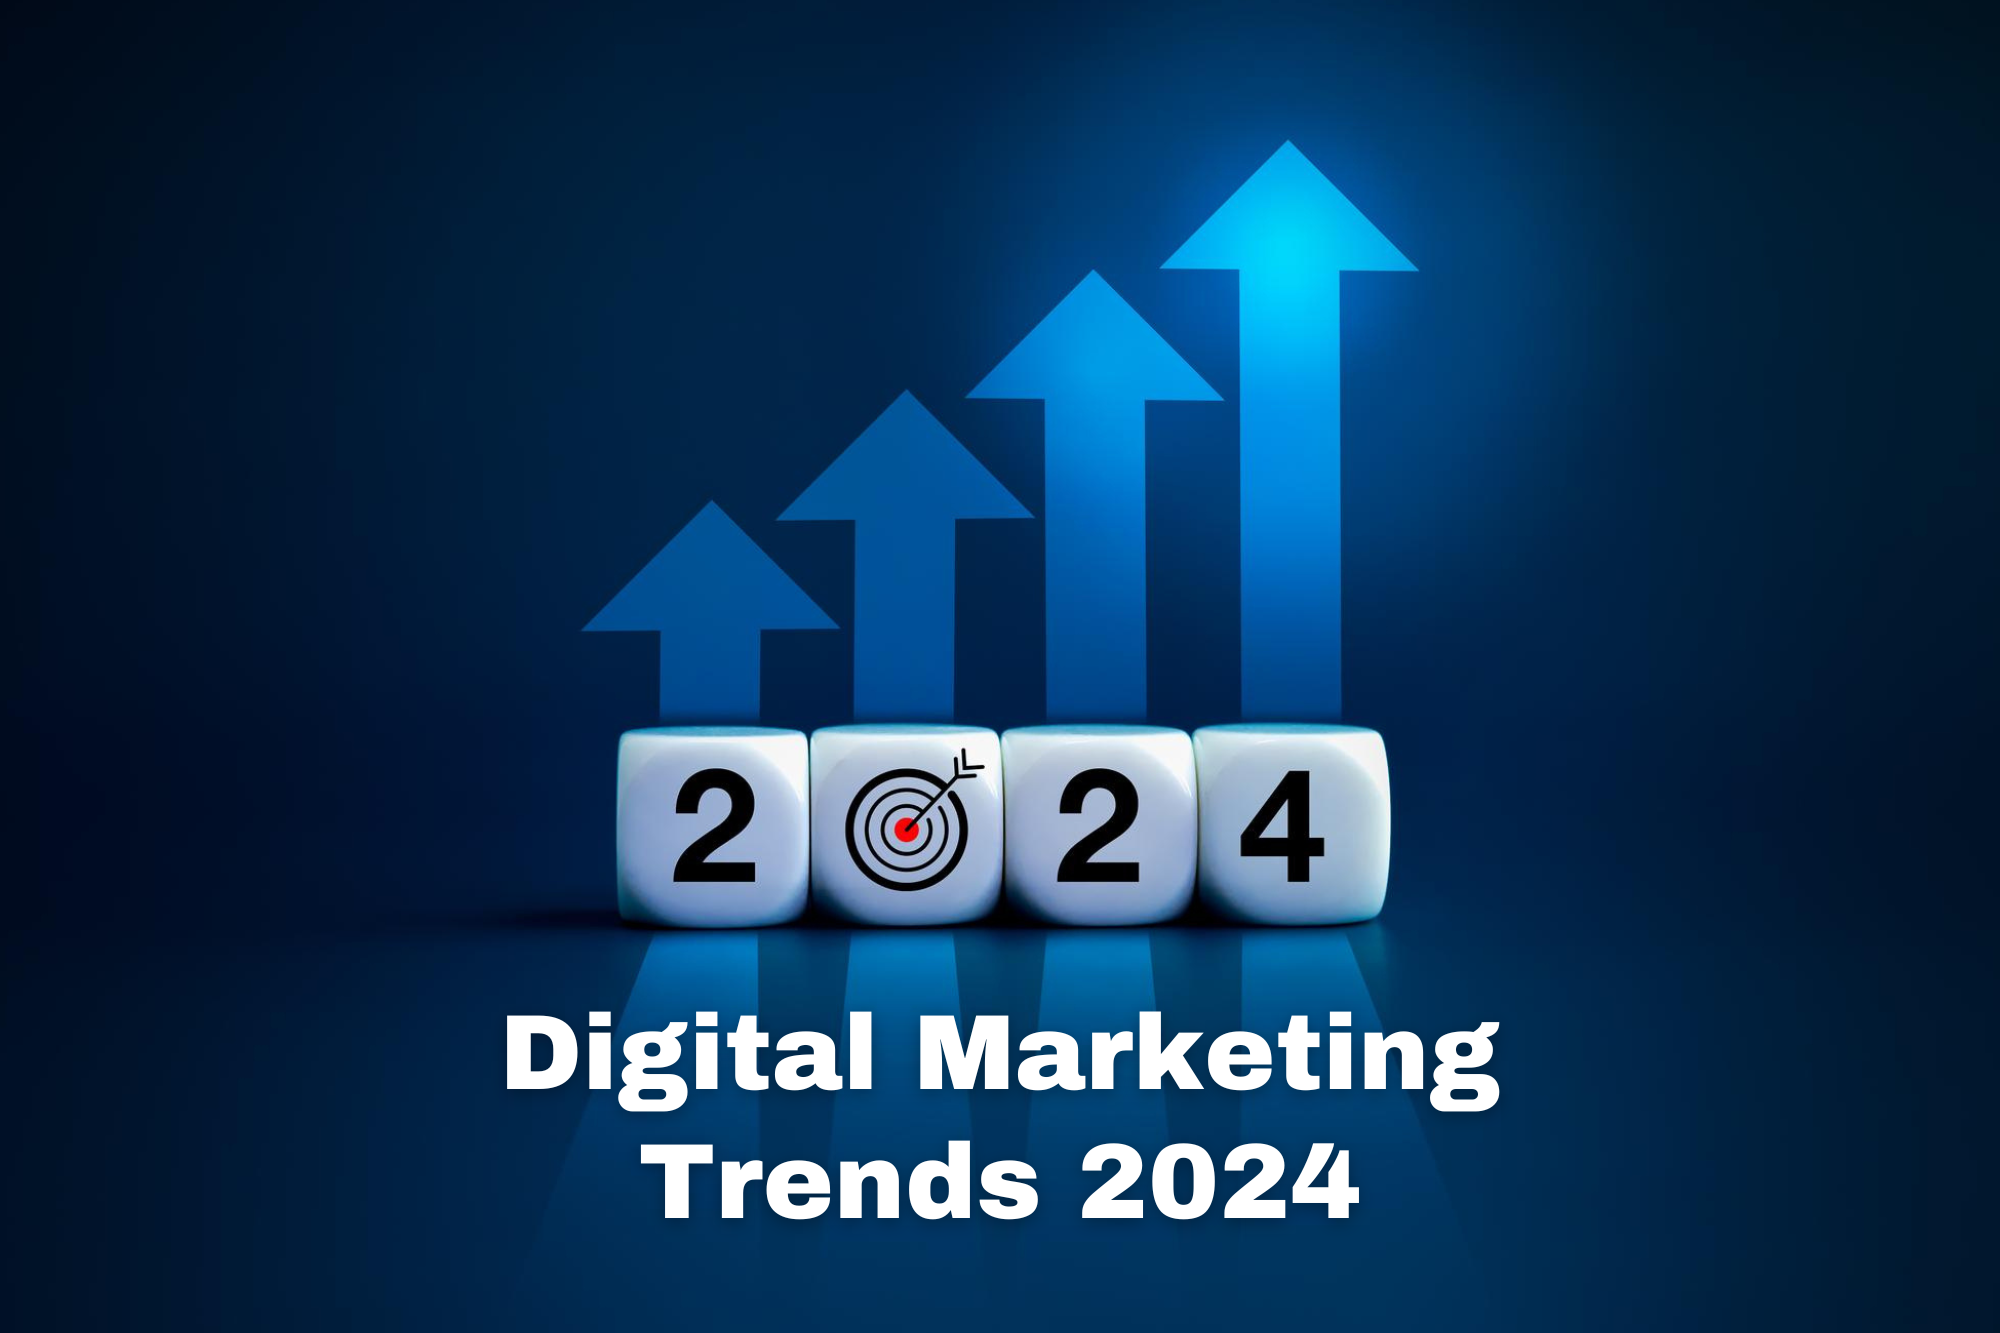 Digital marketing trends 2024